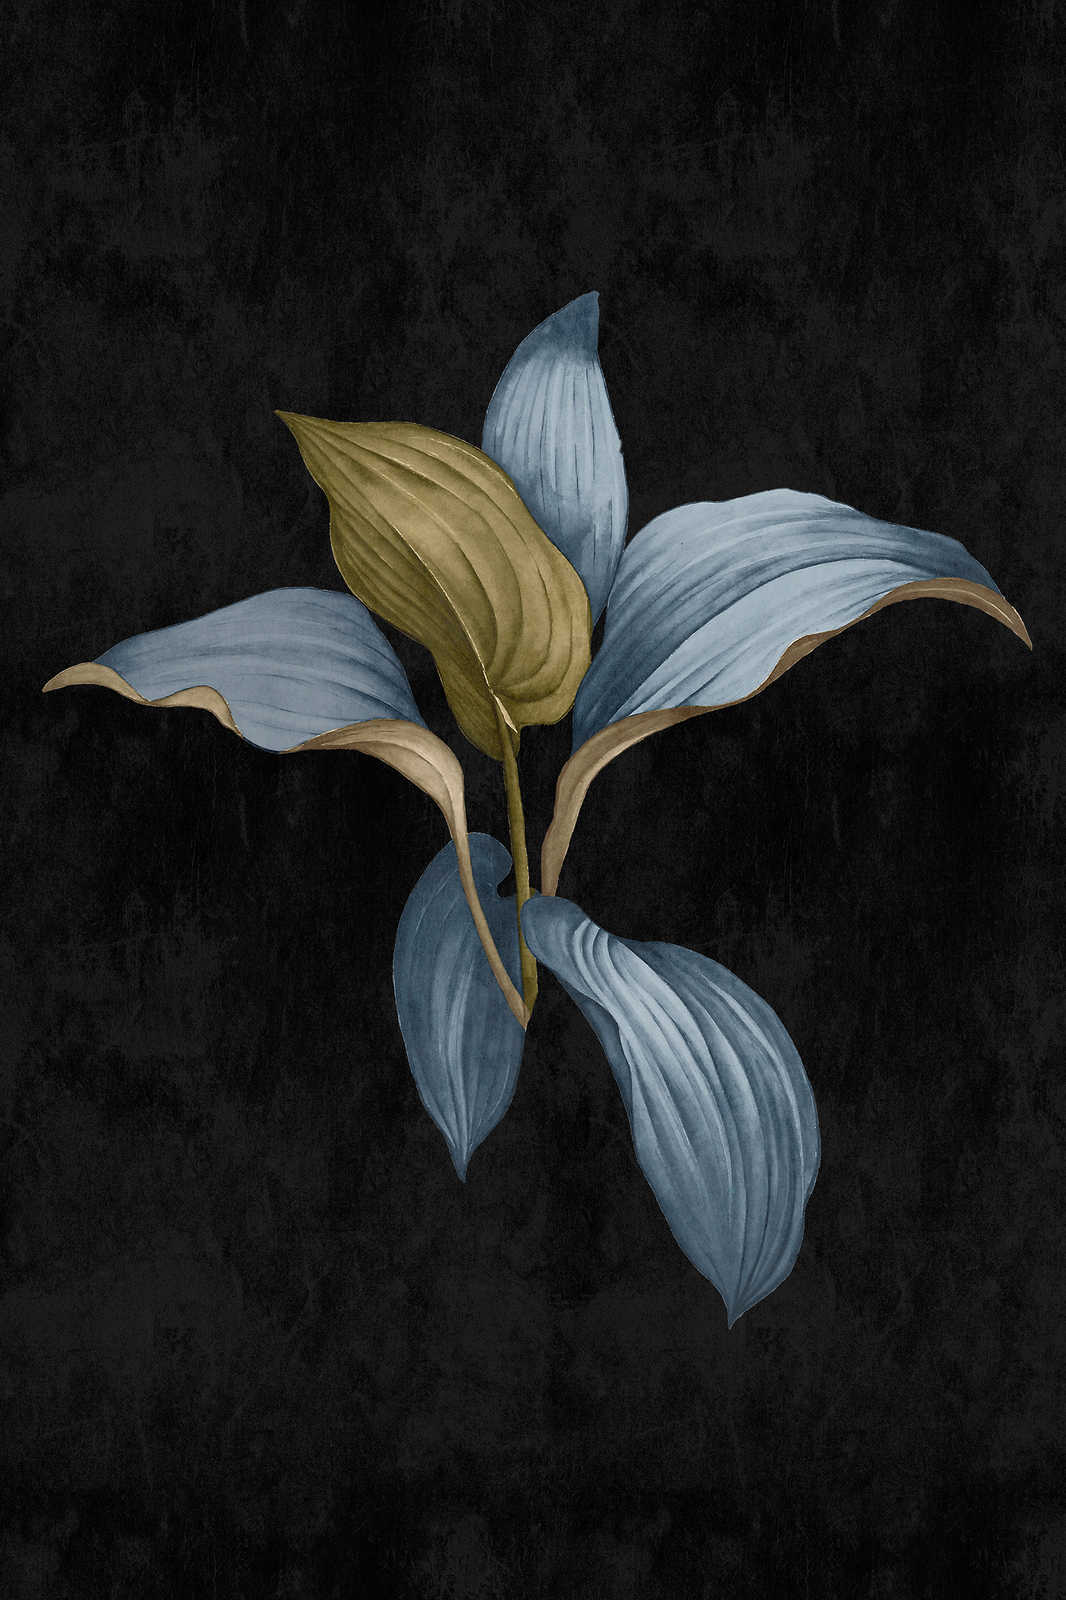             Fiji 3 - Quadro su tela scura con disegno botanico in blu e verde - 0,80 m x 1,20 m
        